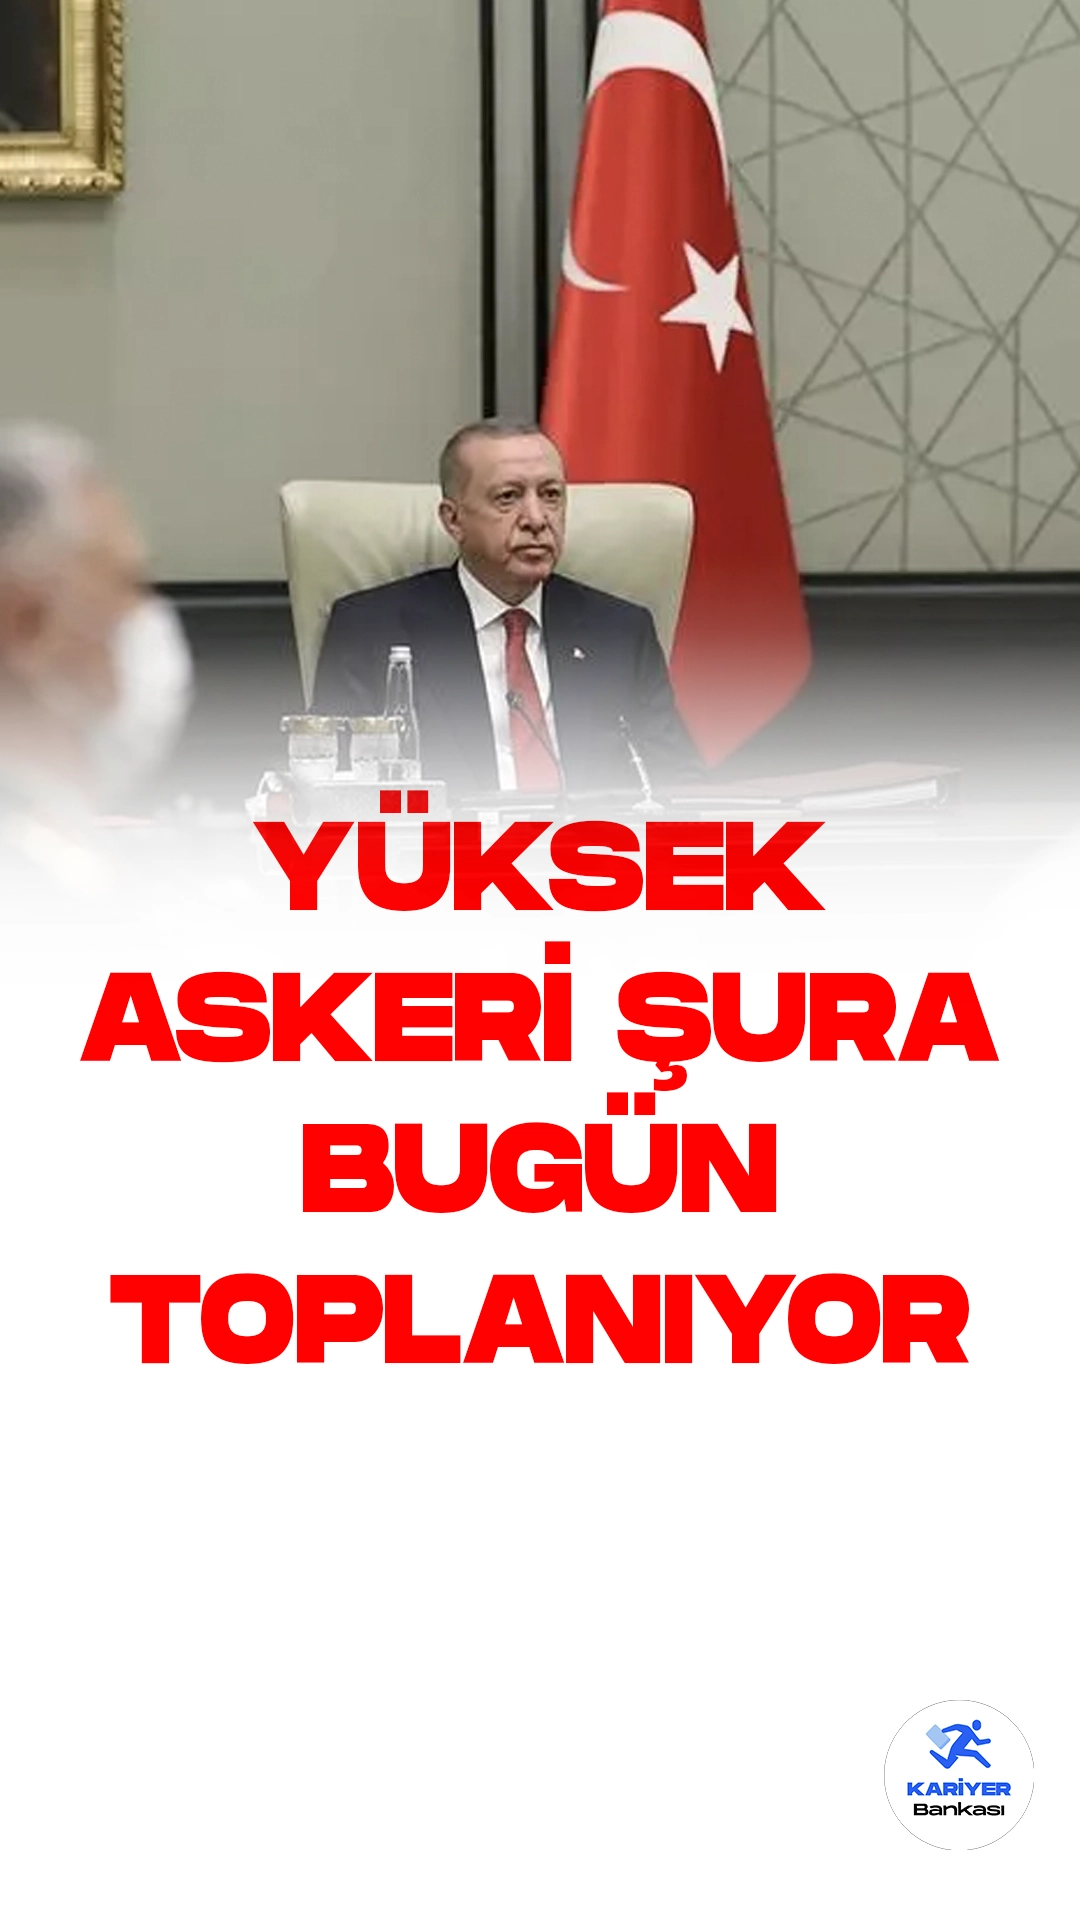 Yüksek Askeri Şura Bugün Beştepe'de Toplanıyor.Bugün Cumhurbaşkanı Recep Tayyip Erdoğan'ın başkanlığında Yüksek Askeri Şura (YAŞ) toplantısı Beştepe'de gerçekleşecek.